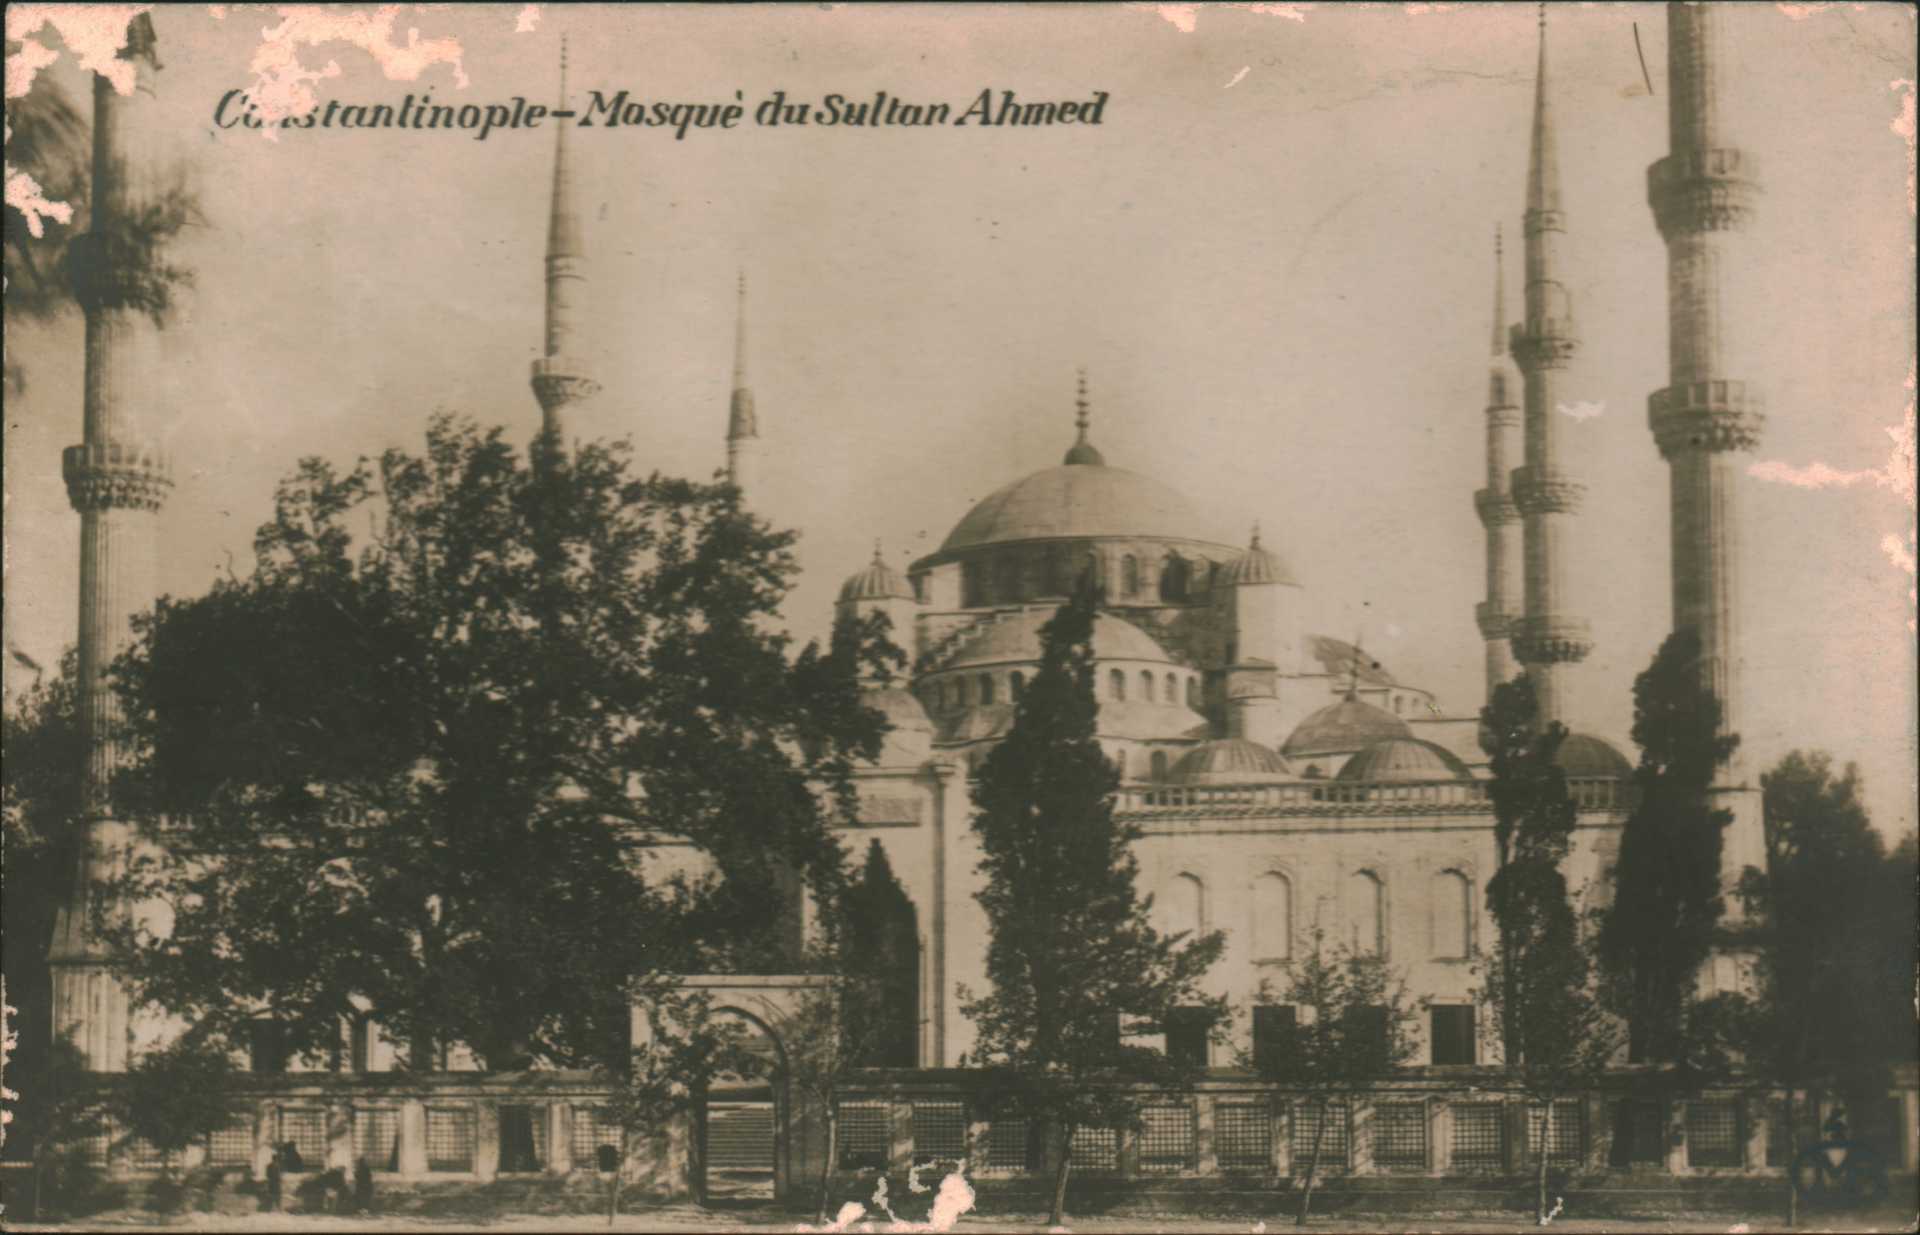 Constantinople – Masque du Sultan Ahmed